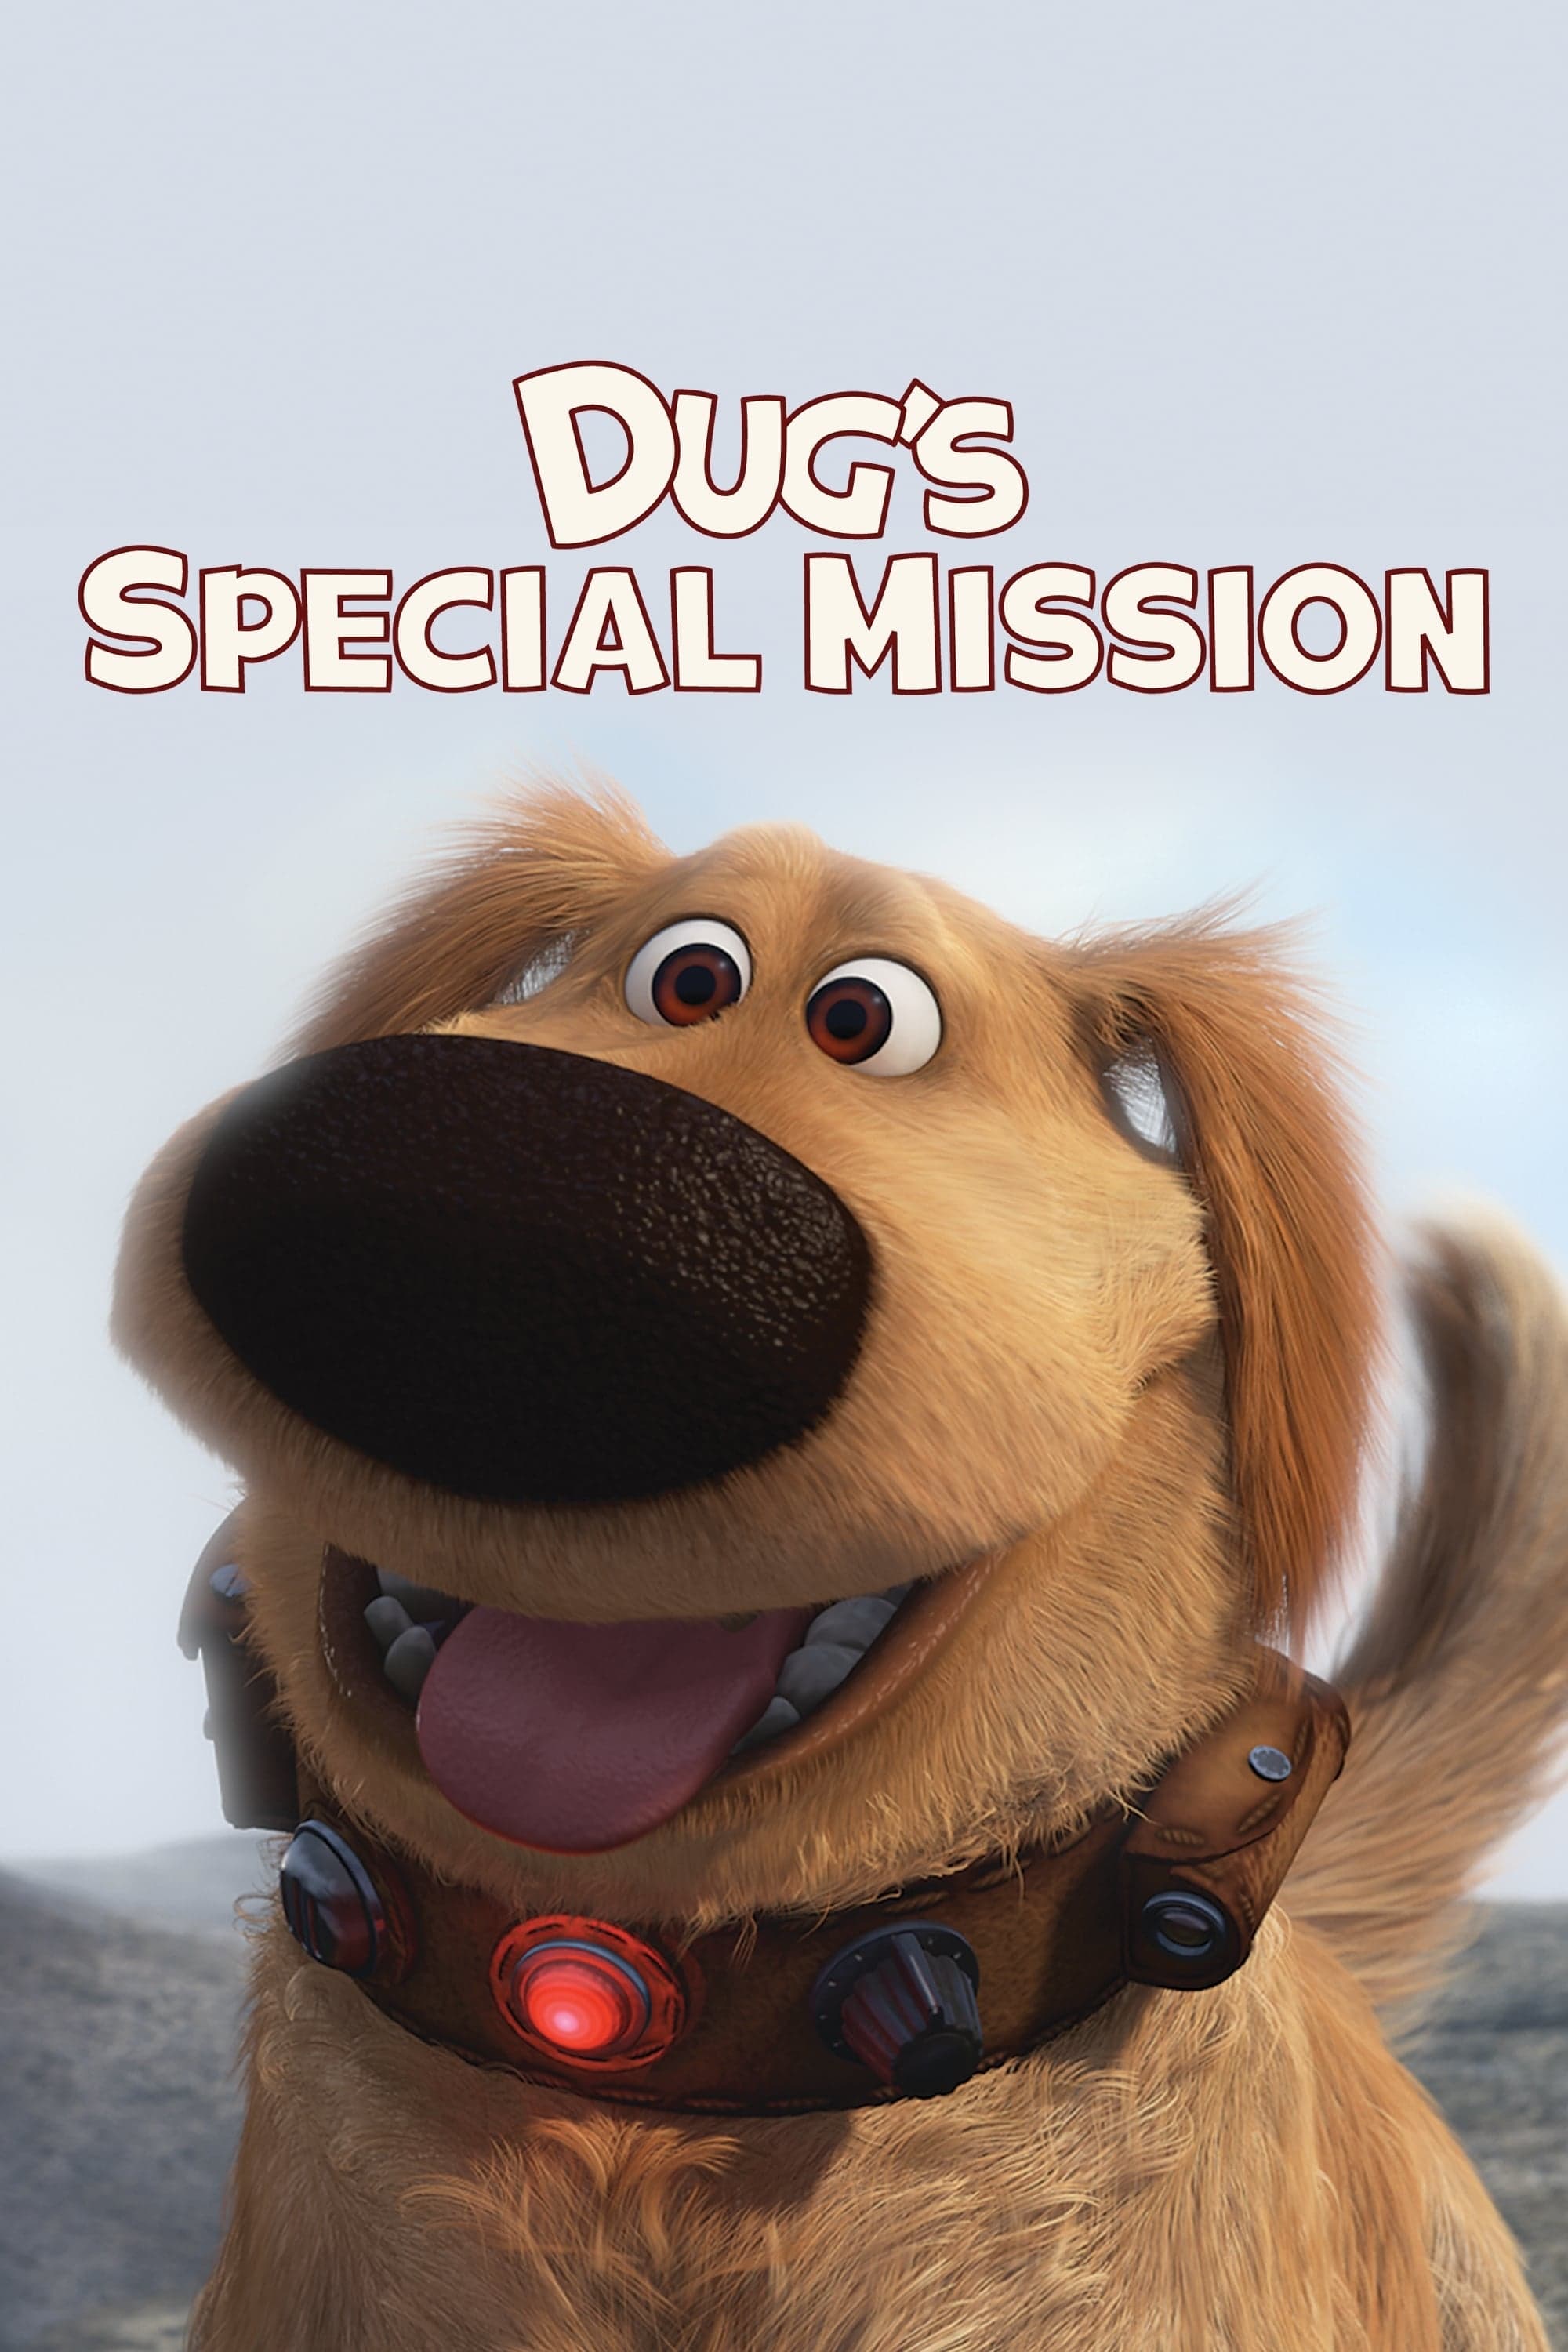 La misión especial de Dug